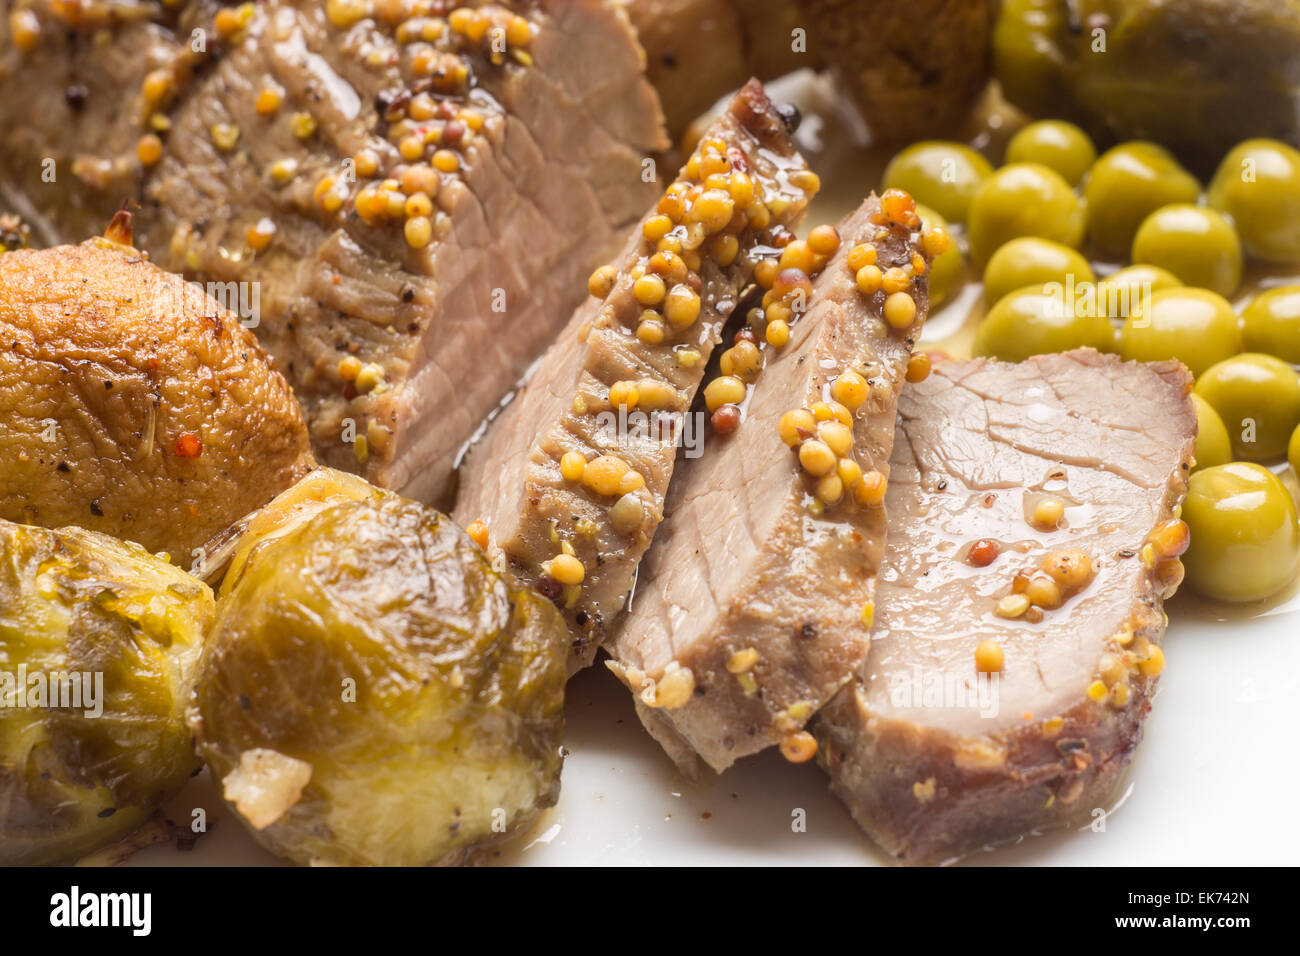 Restaurant-Fleisch-Menü-Hintergrund. Scheiben Roastbeef mit Grillgemüse auf weißen Teller. Schließen Sie herauf Bild Stockfoto